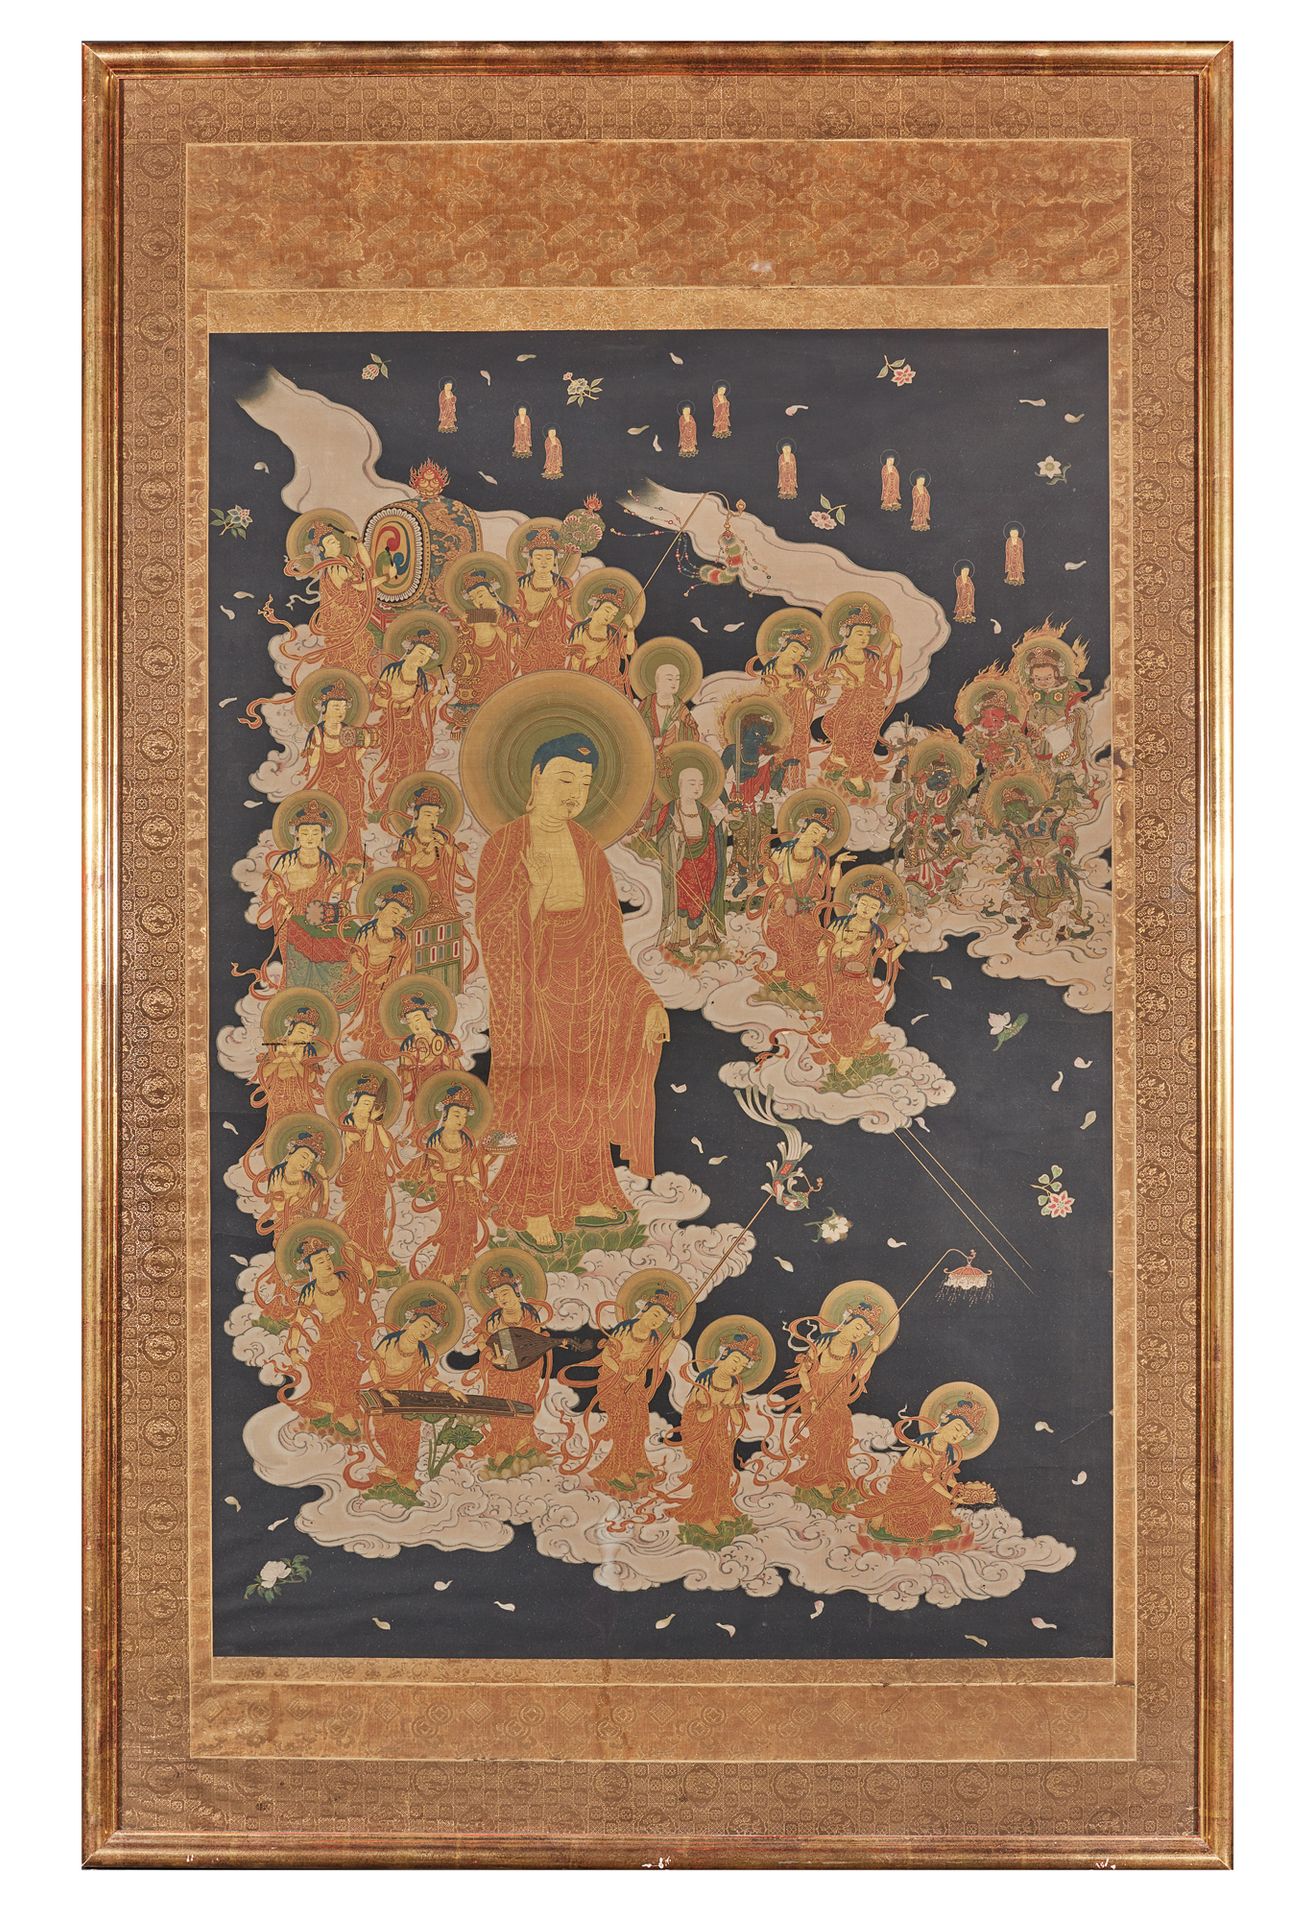 JAPON - Epoque EDO (1603 - 1868), XVIIIe siècle Amida Raigo: El descenso de Amid&hellip;